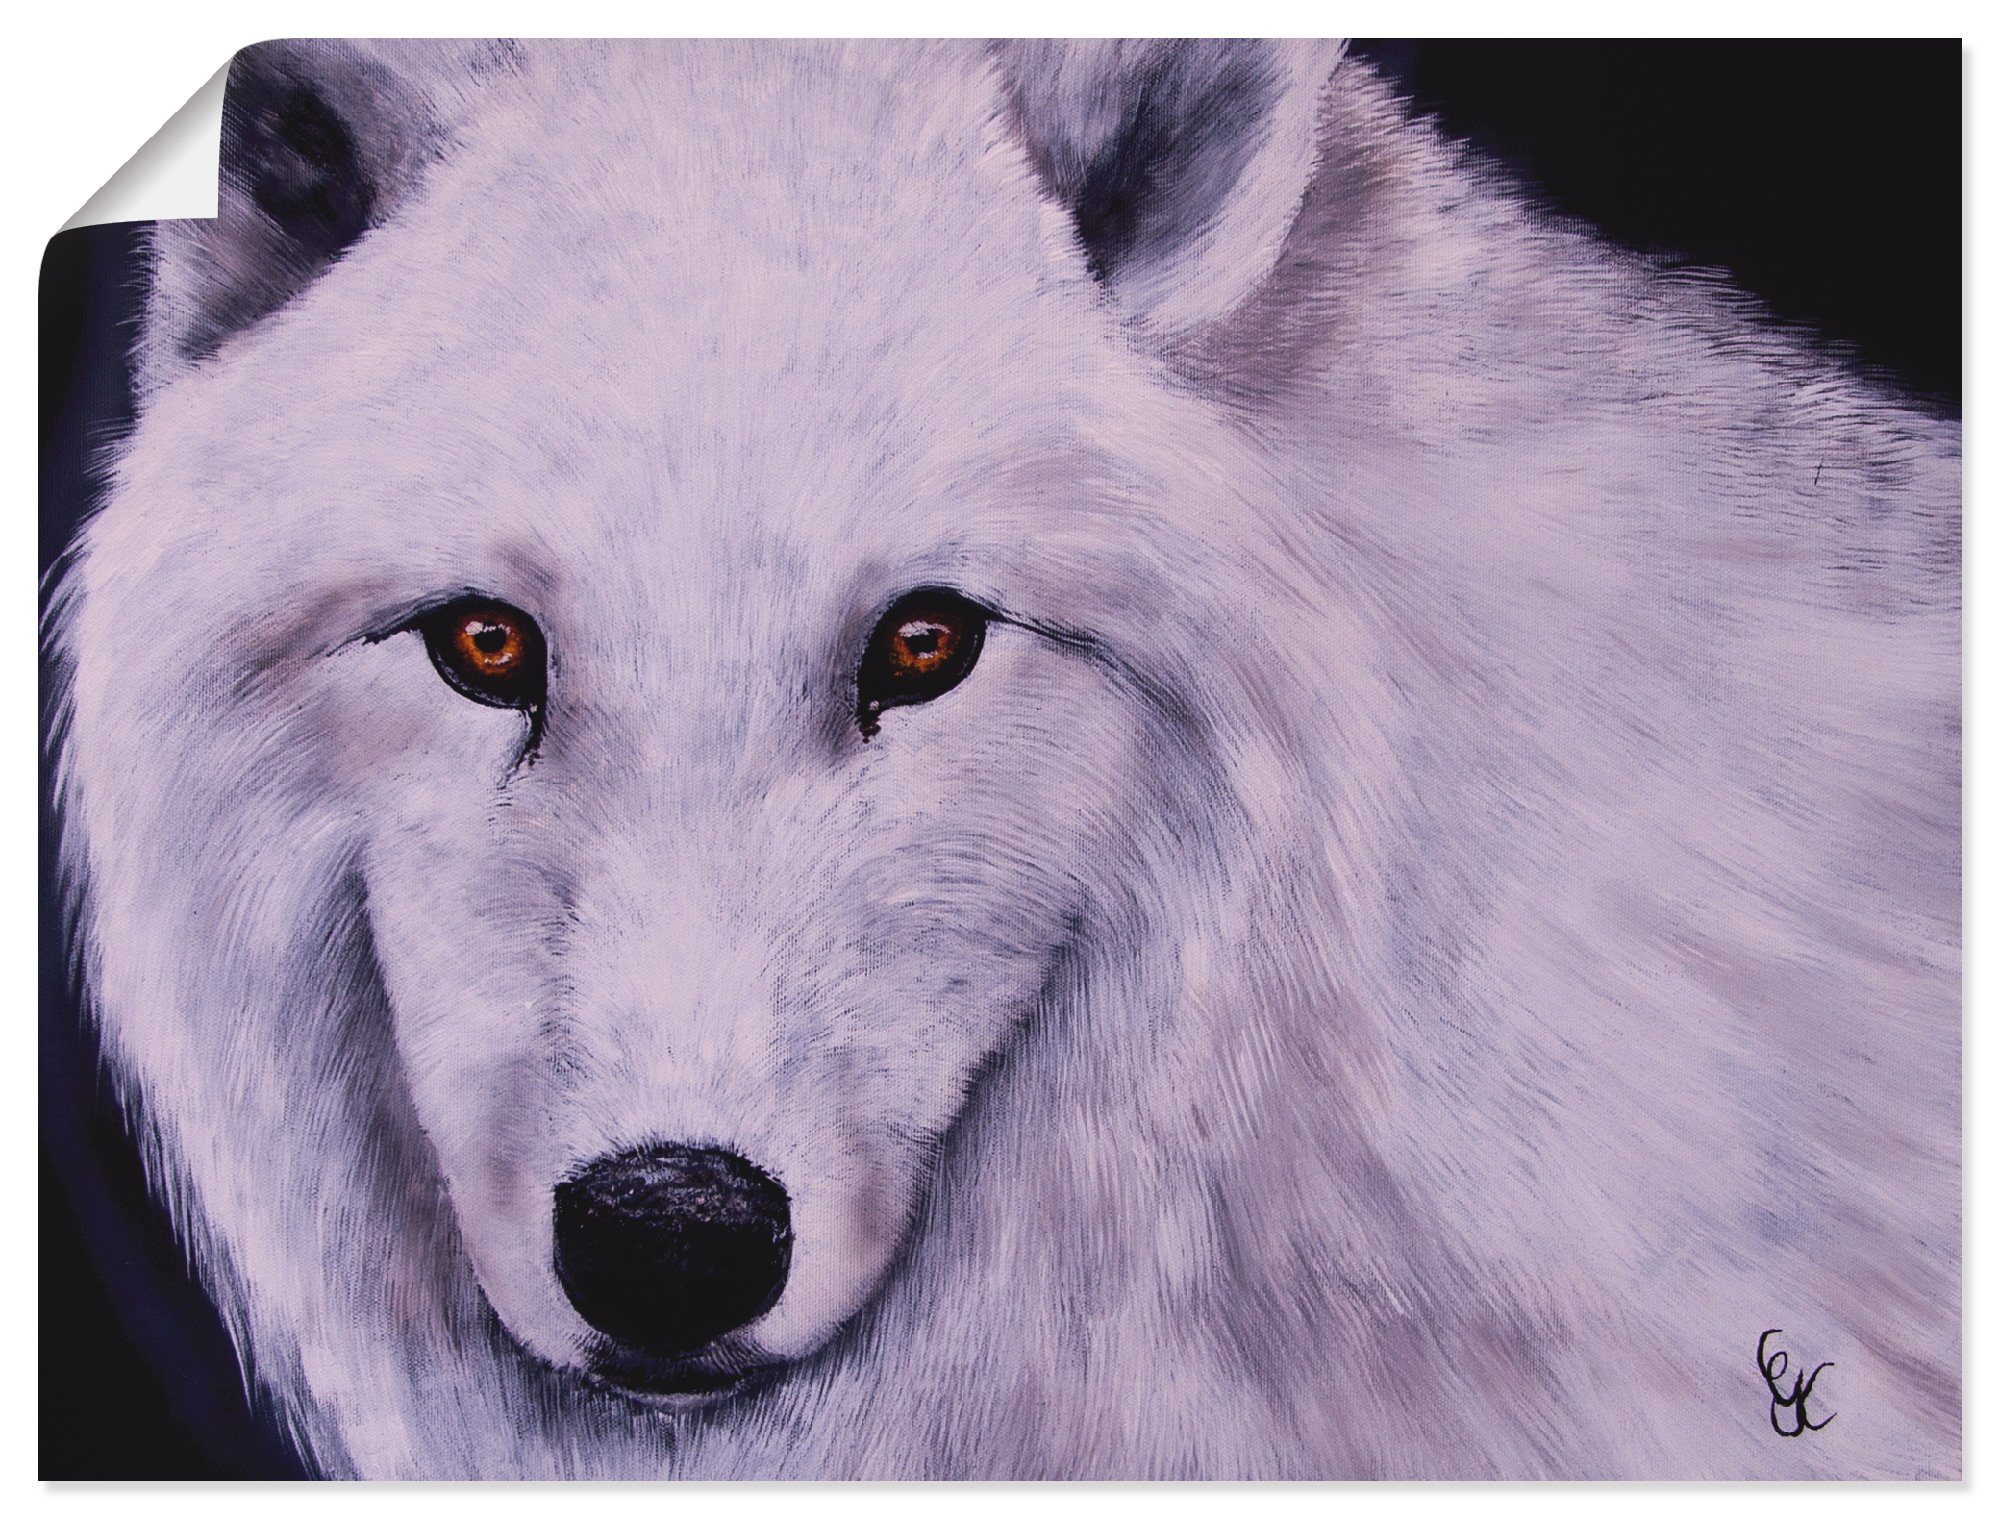 Artland Artprint Witte wolf in vele afmetingen & productsoorten - artprint van aluminium / artprint voor buiten, artprint op linnen, poster, muursticker / wandfolie ook geschikt vo